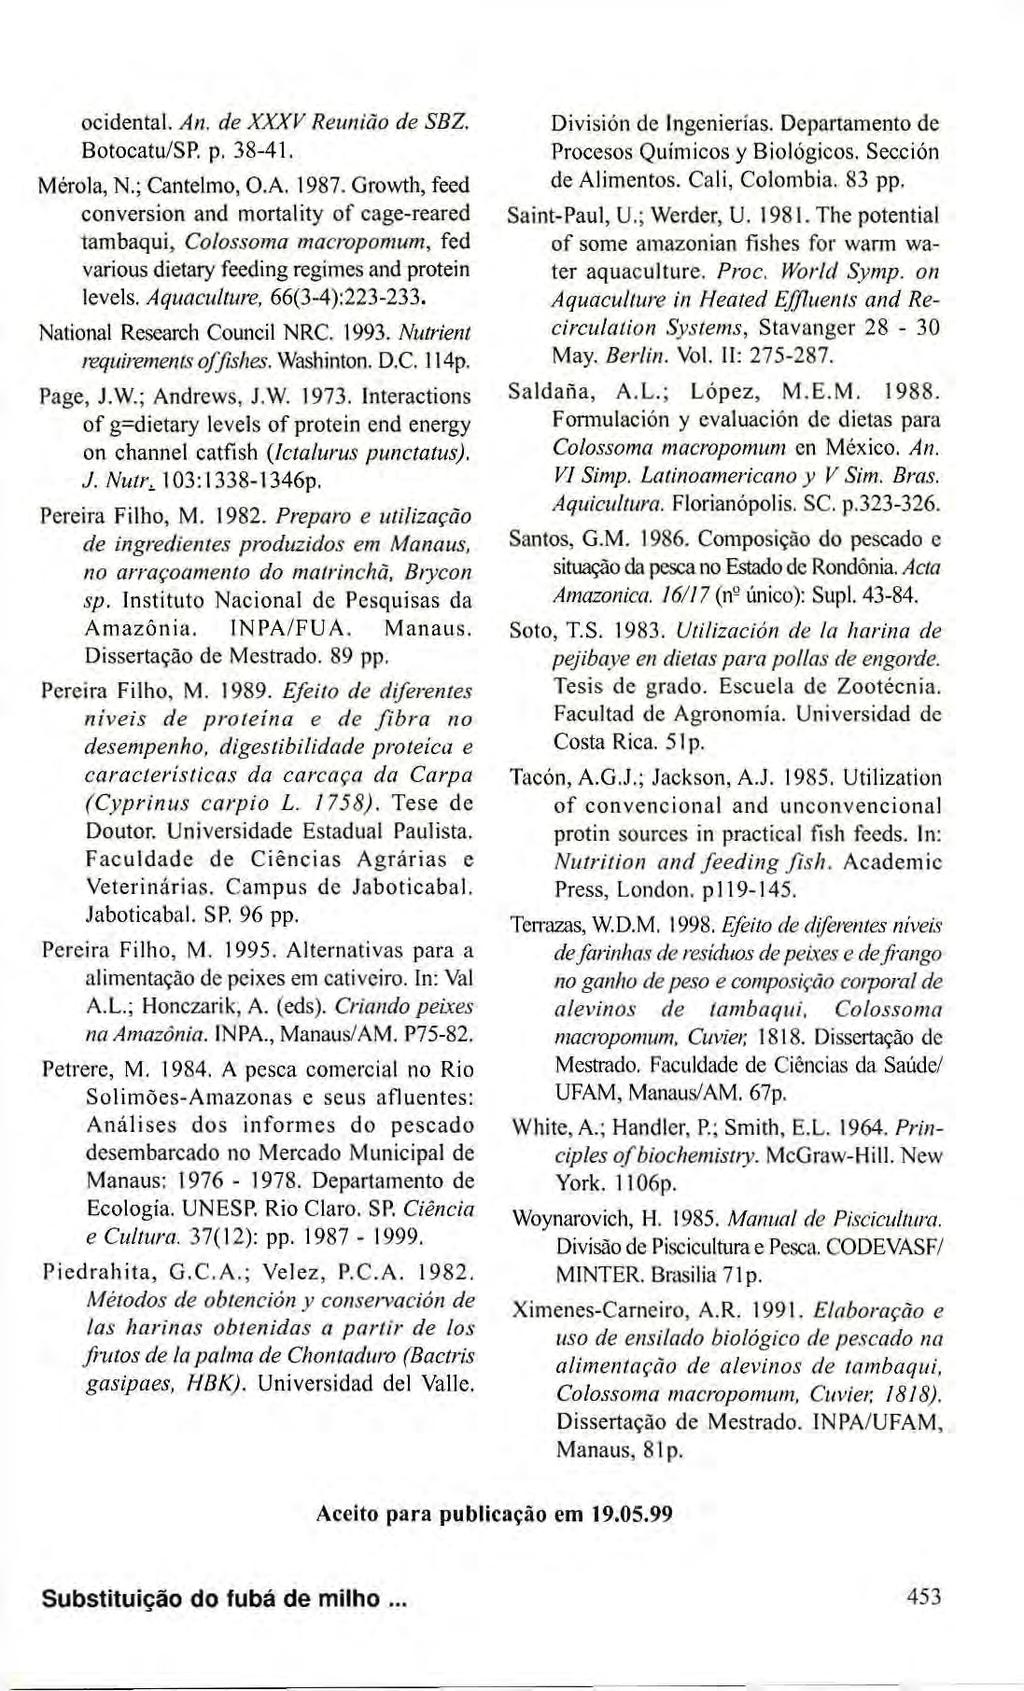 ocidental. An. de XXXV Reunião de SBZ. Botocatu/SP. p. 38-41. Mérola, R; Cantelmo, O.A. 1987.